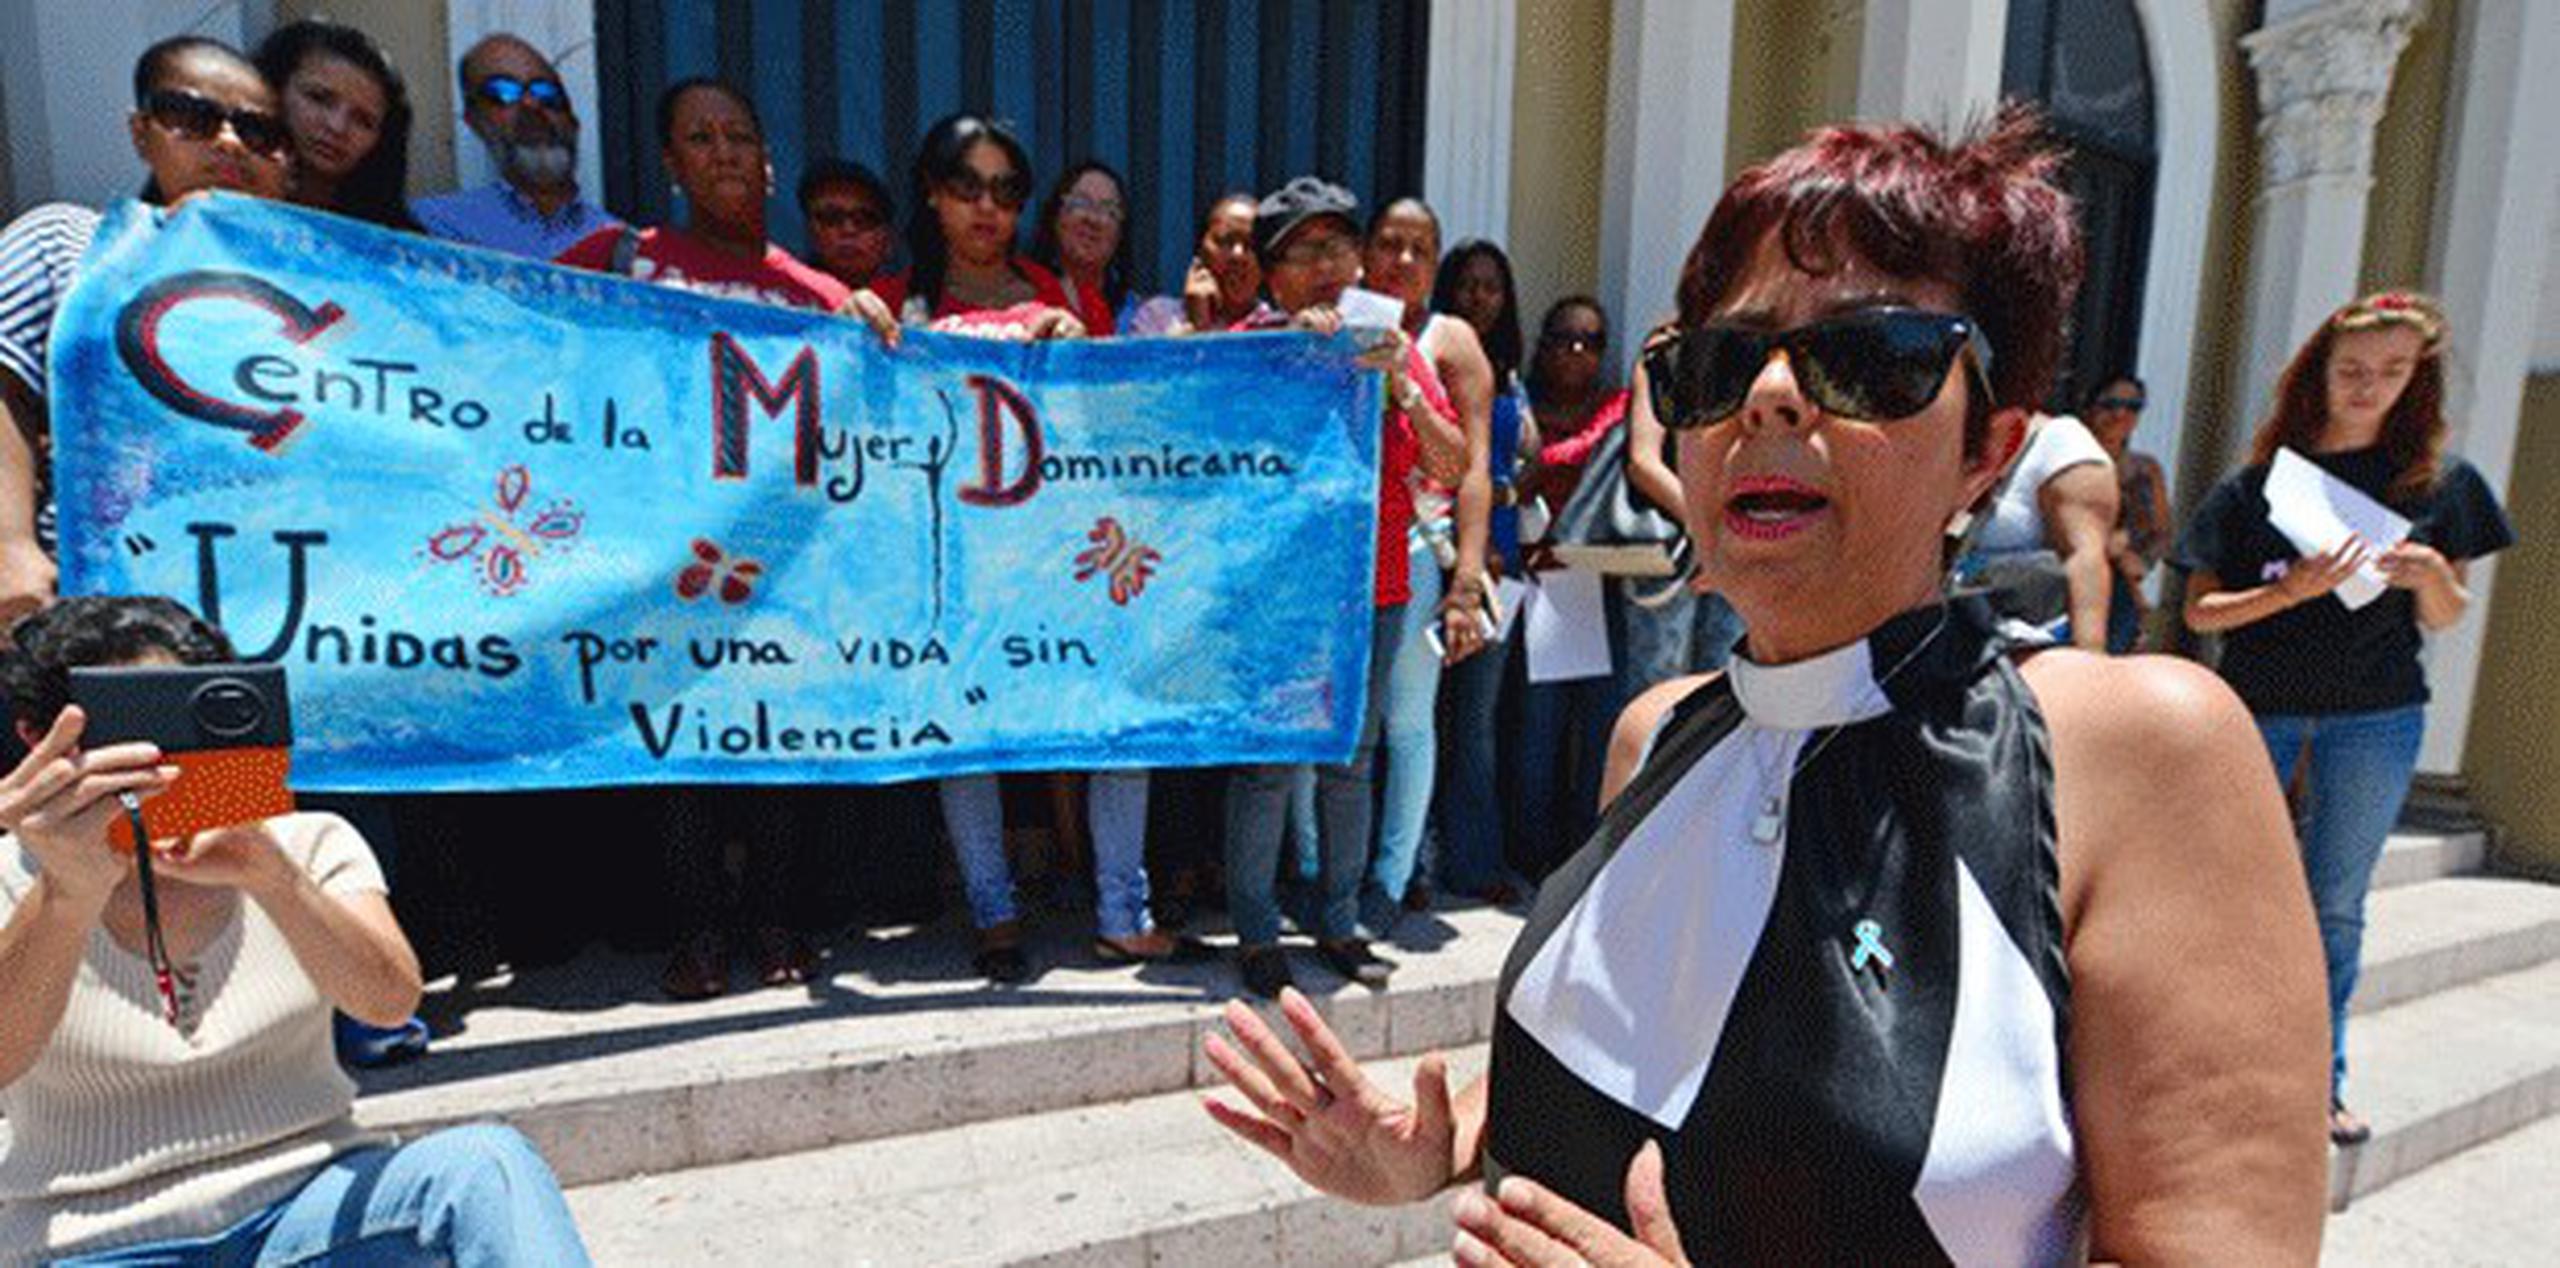 Concentración Por respeto a nuestros cuerpos, organizada por el Centro de la Mujer Dominicana. (LUIS.ALCALADELOLMO@GFRMEDIA.COM)